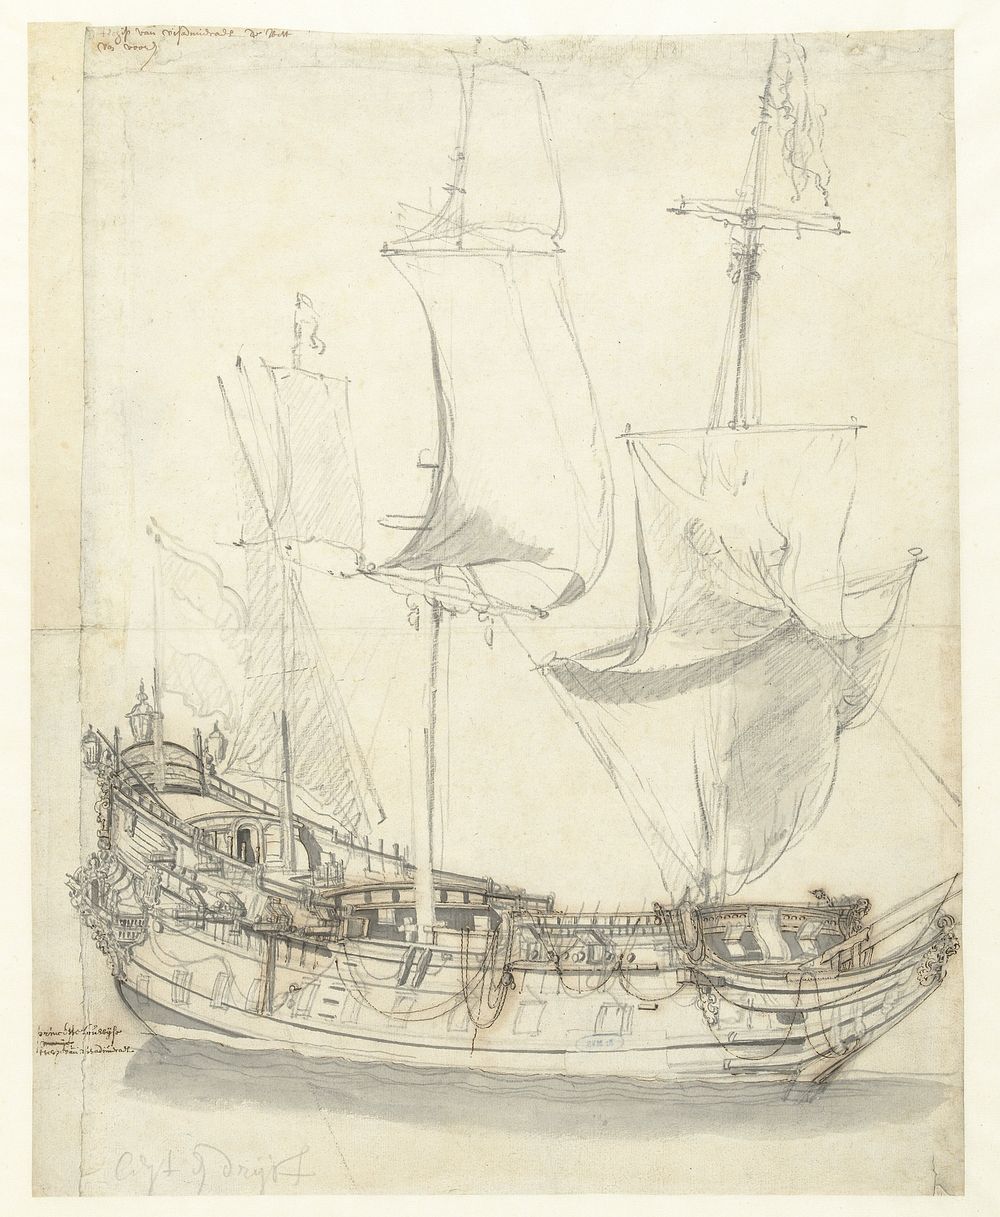 Schip de Princesse Royale van vice-admiraal Witte de With (1643 - 1707) by Willem van de Velde I and Willem van de Velde II